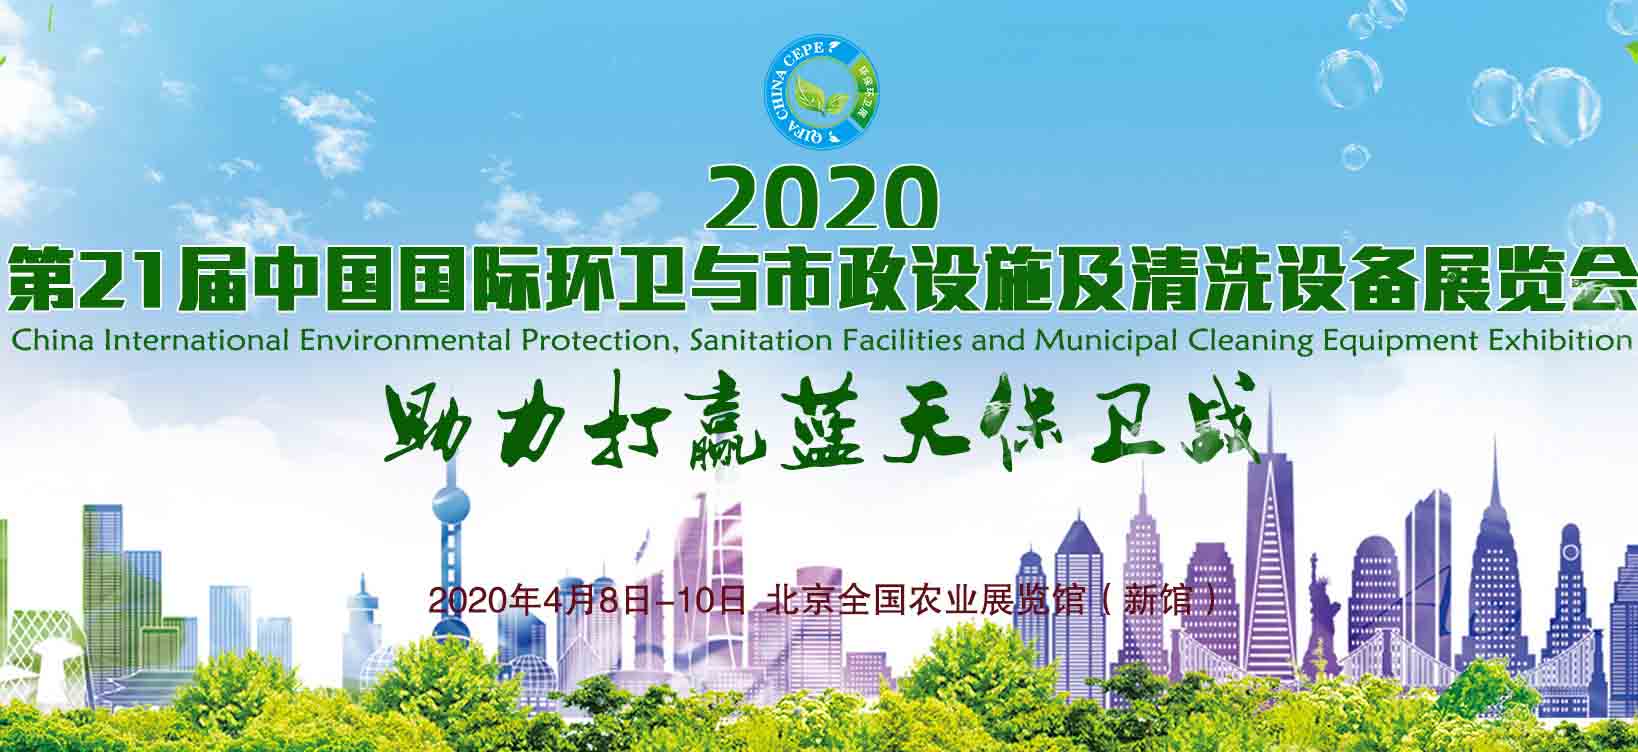 2020年中国国际环卫与市政设施及清洗设备展览会-主场展台设计规范